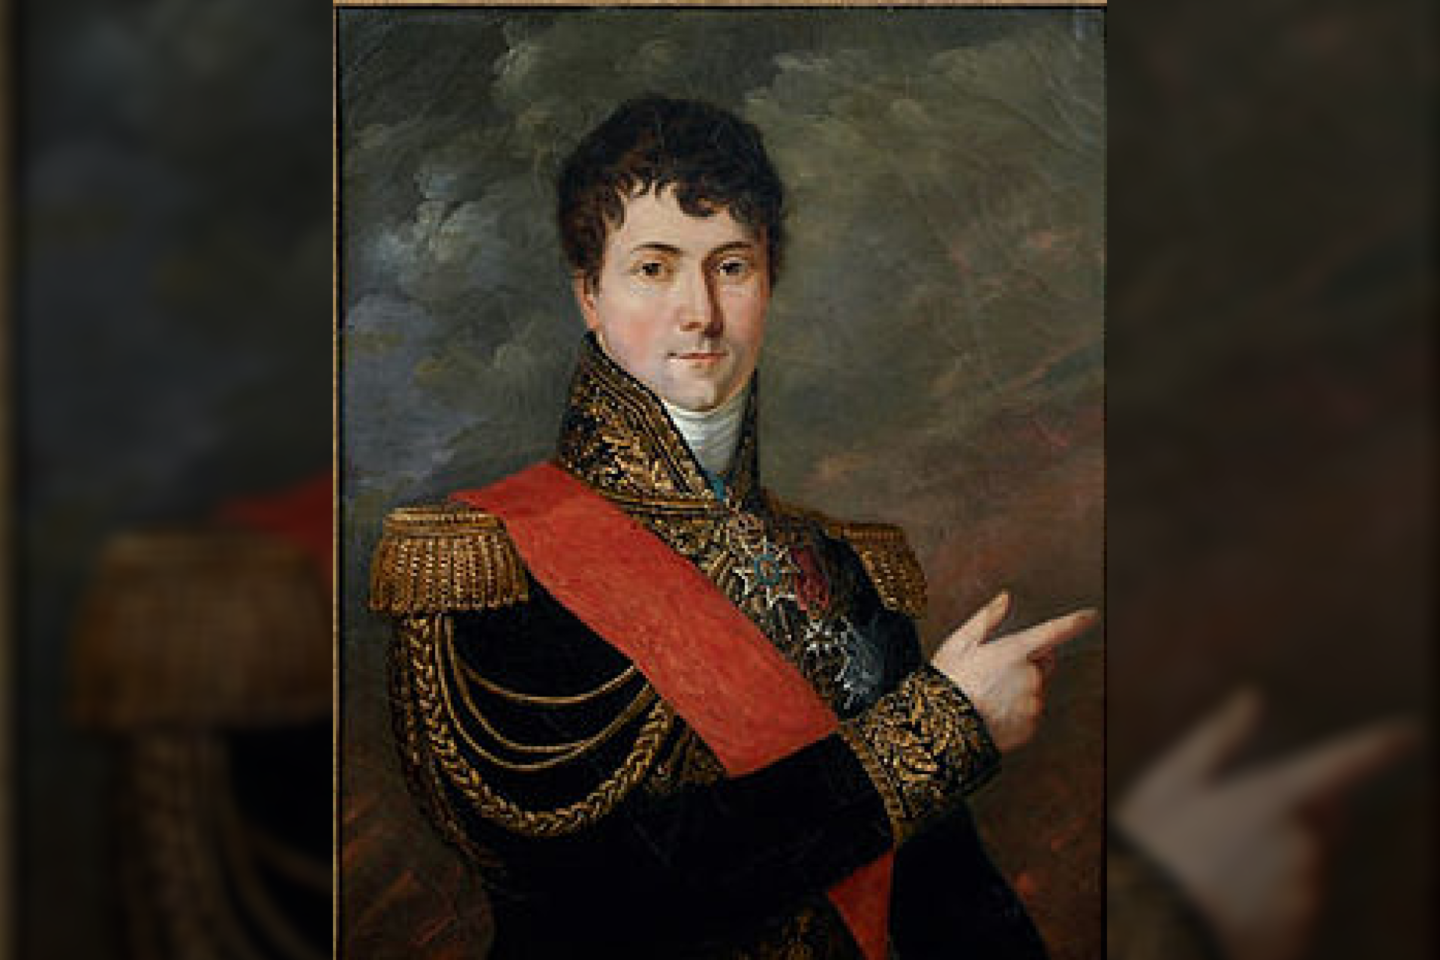  Po mirties 1812 m. rugpjūčio 22 d. 44 metų generolas buvo itin pagerbtas: jo vardas buvo įrašytas Paryžiaus Triumfo arkoje<br>Wikimedia commons